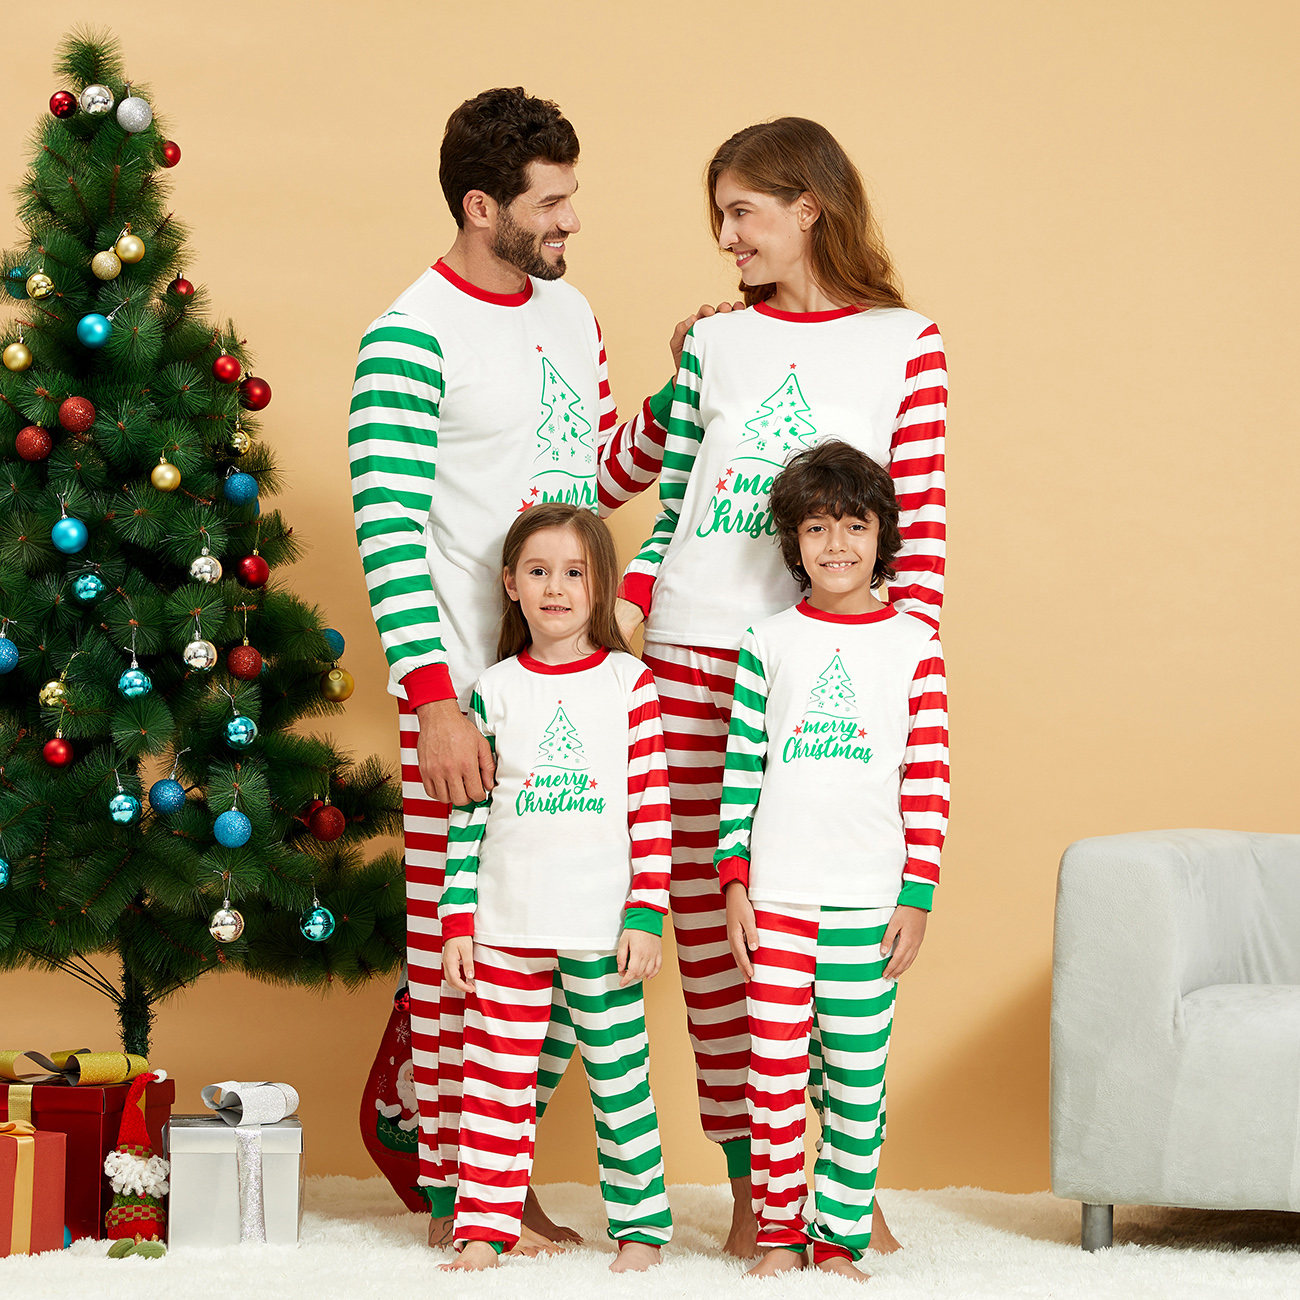 Merry Christmas Tree Print Striped Family Matching Pajamas Set